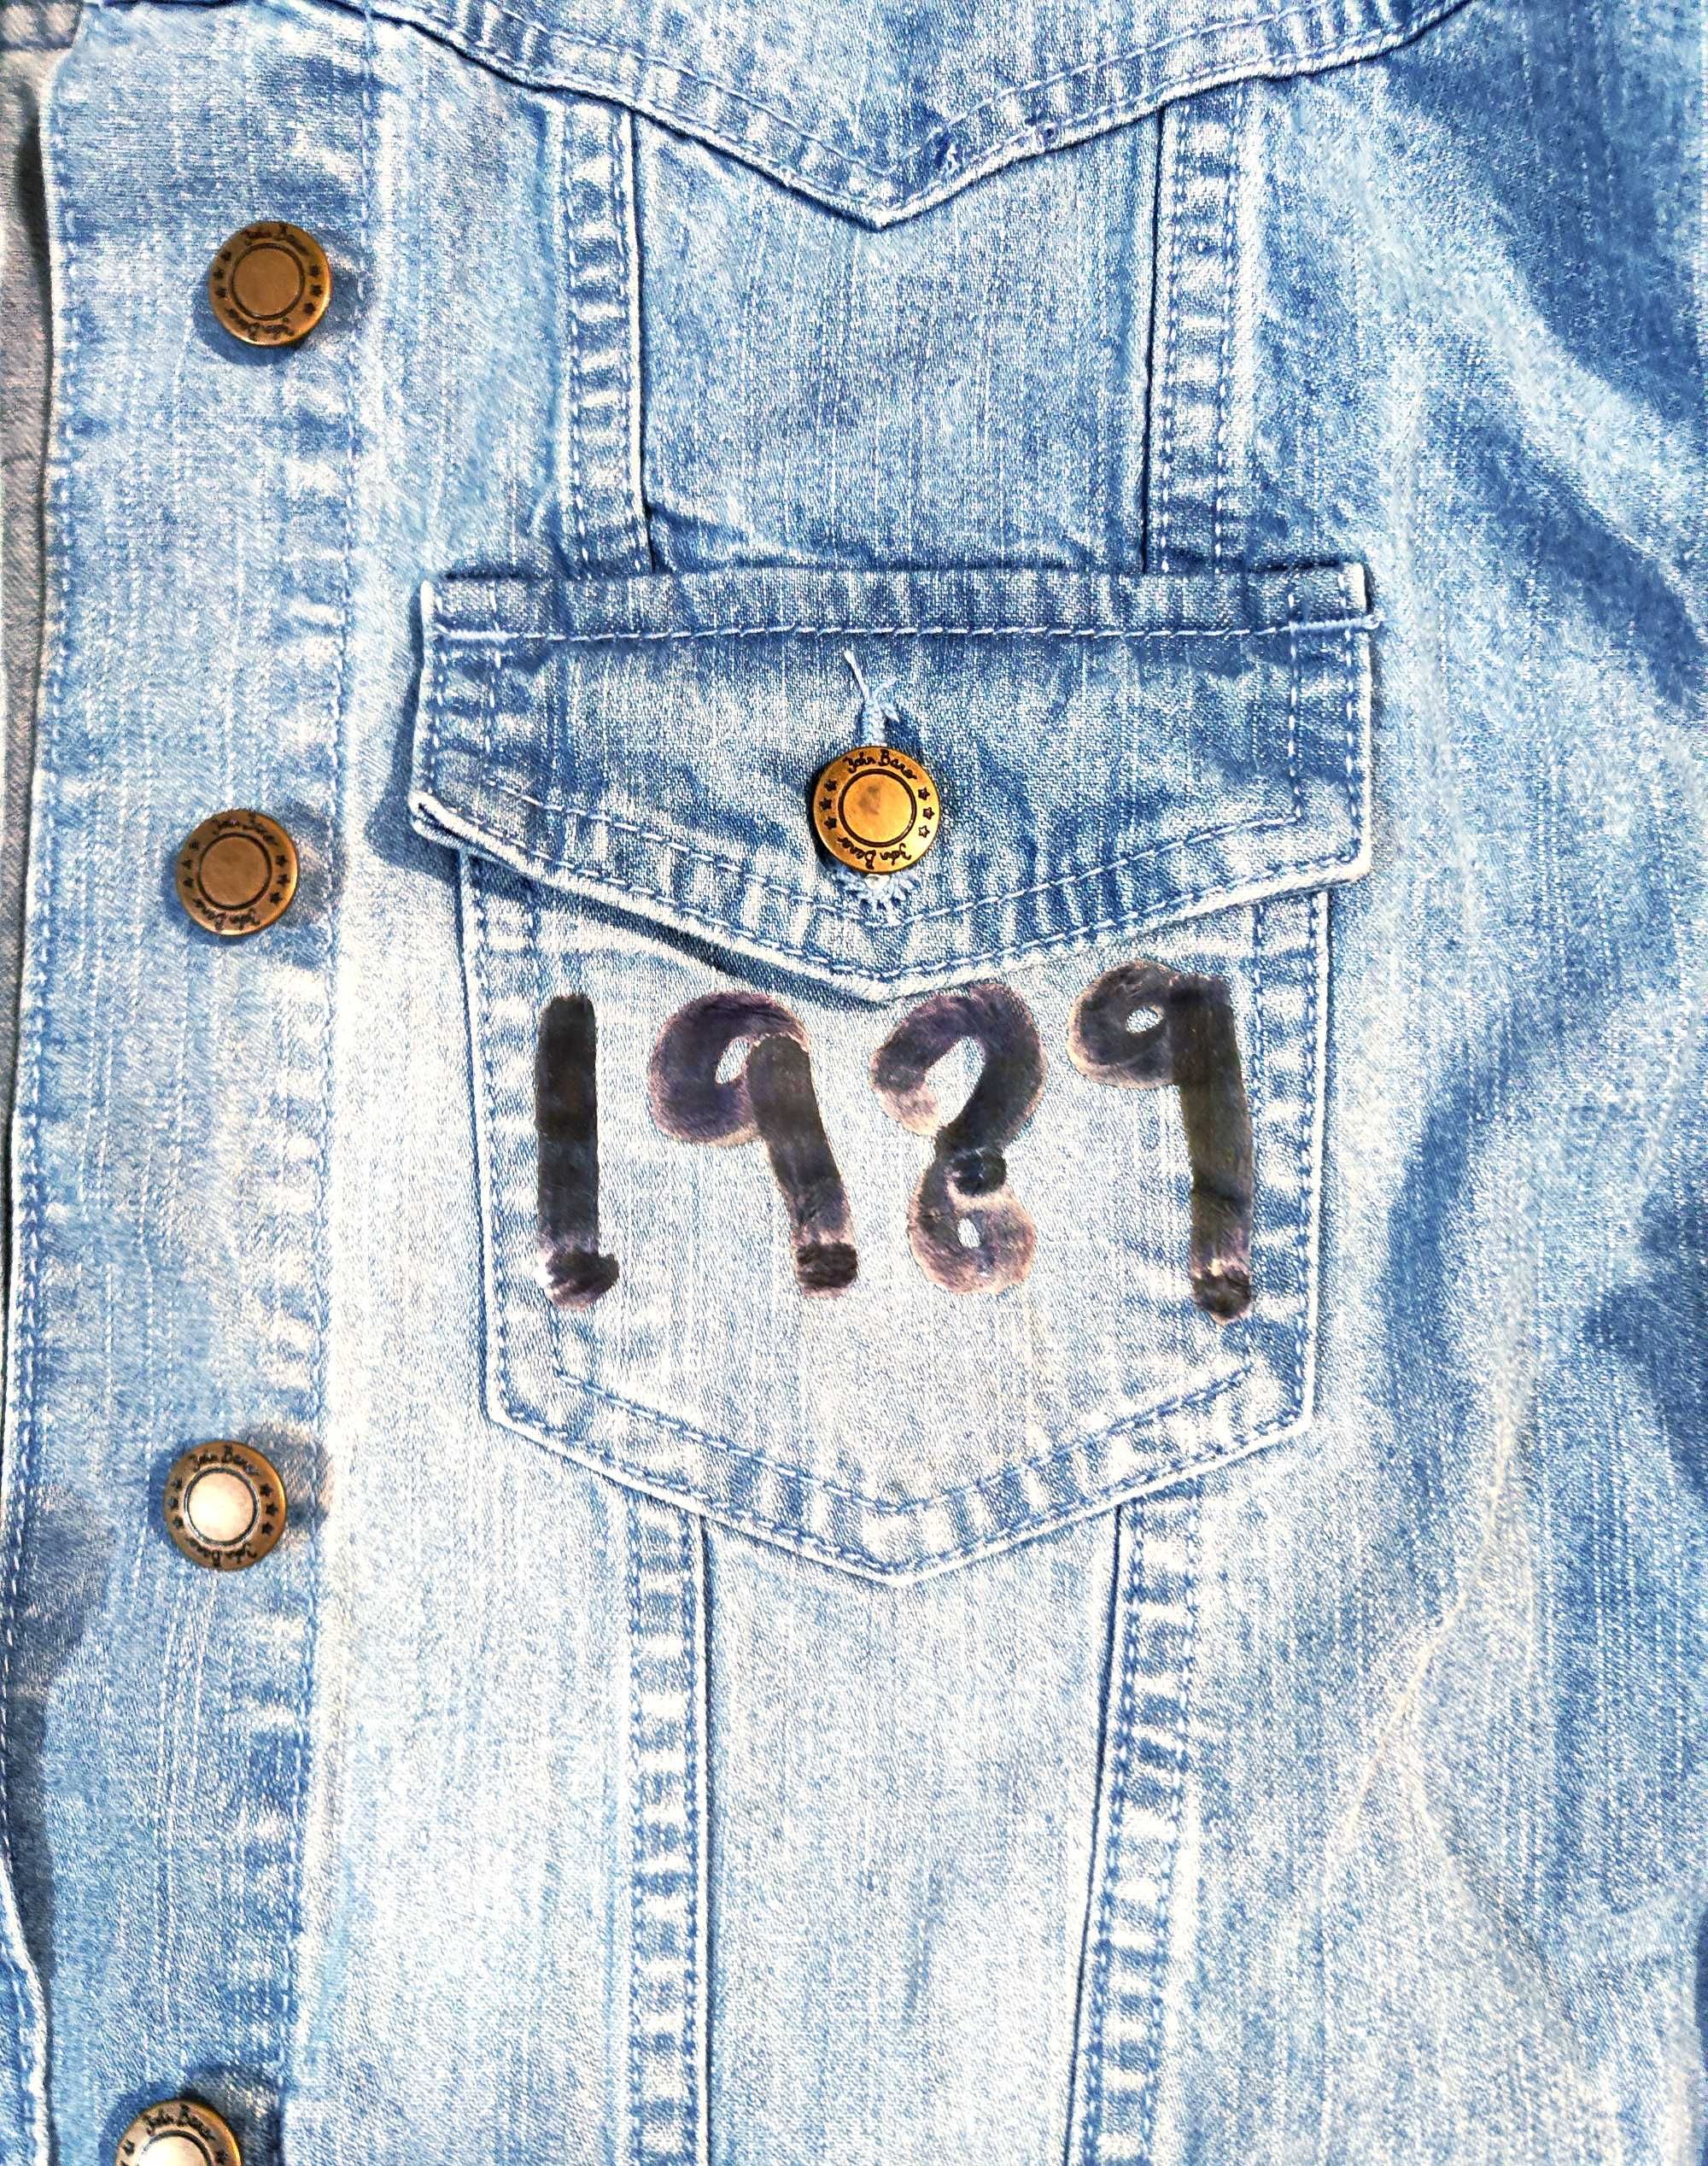 Kurtka jeansowa z przetarciami Taylor Swift 1989 Taylor's version